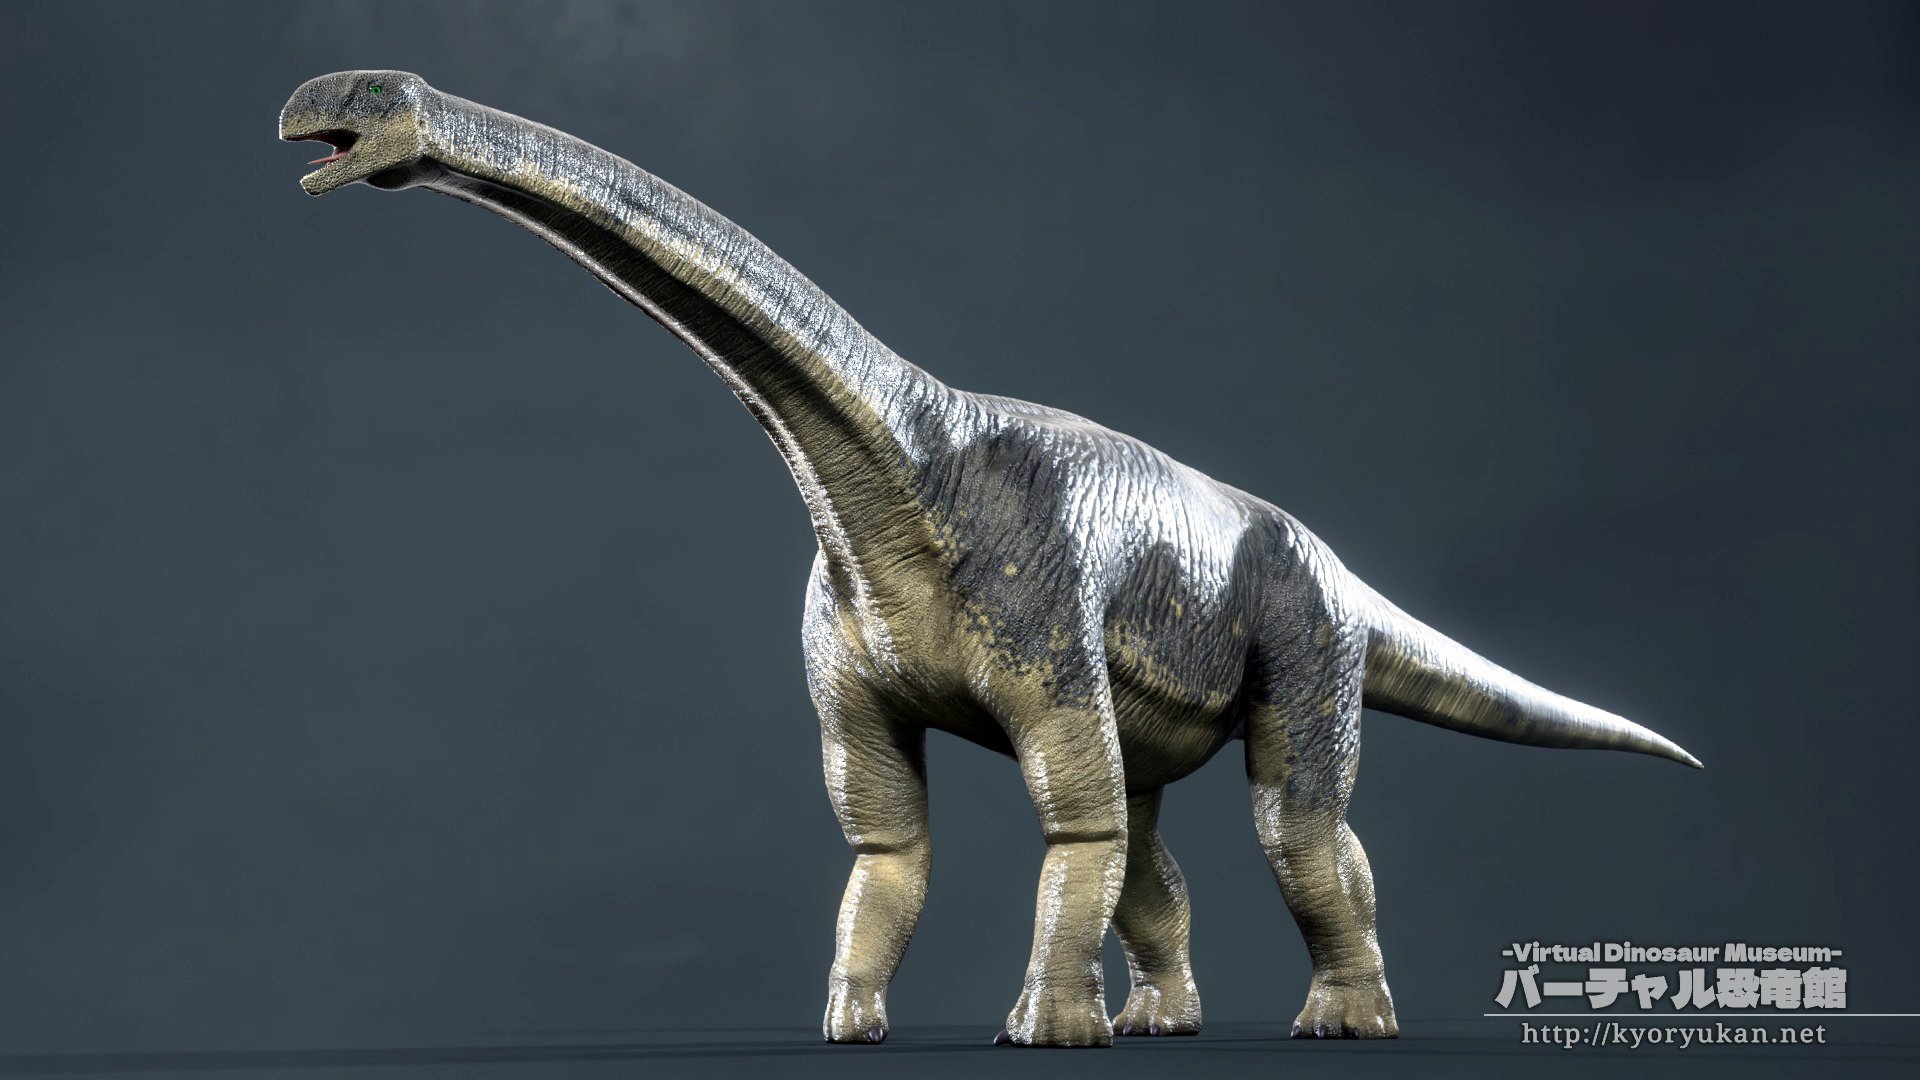 藤宮翔流 バーチャル恐竜館館長 Turiasaurus d Blender Dinosaur Dinosaurs Paleoart T Co Jj48nv5xw2 Twitter